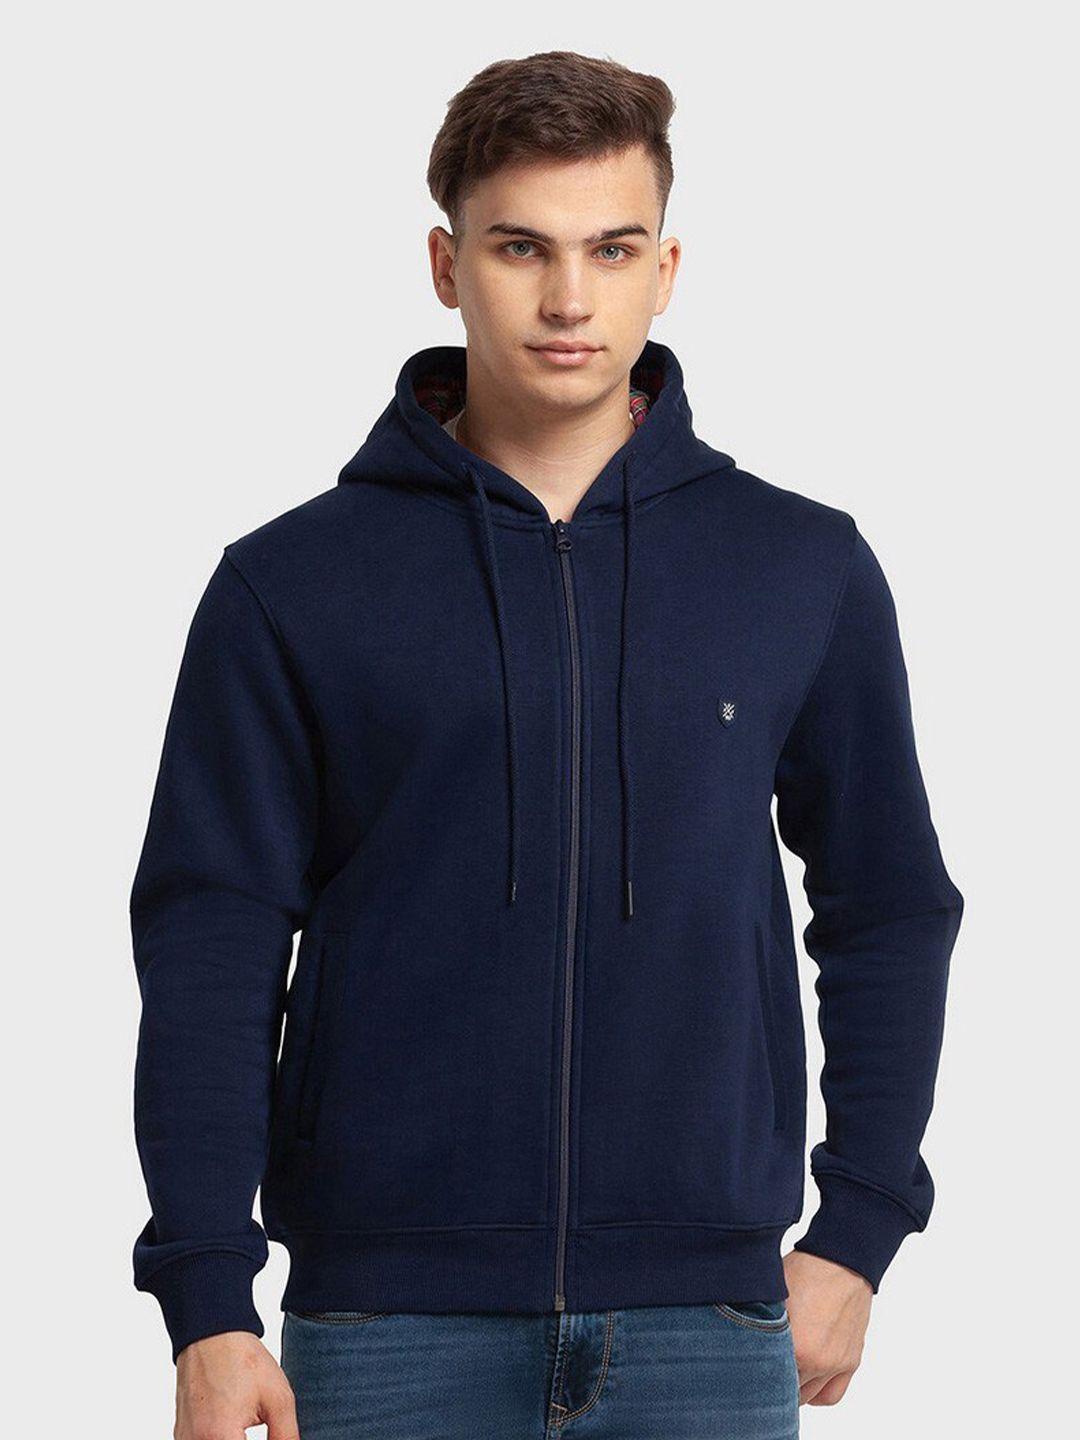 colorplus men navy blue hooded sweatshirt